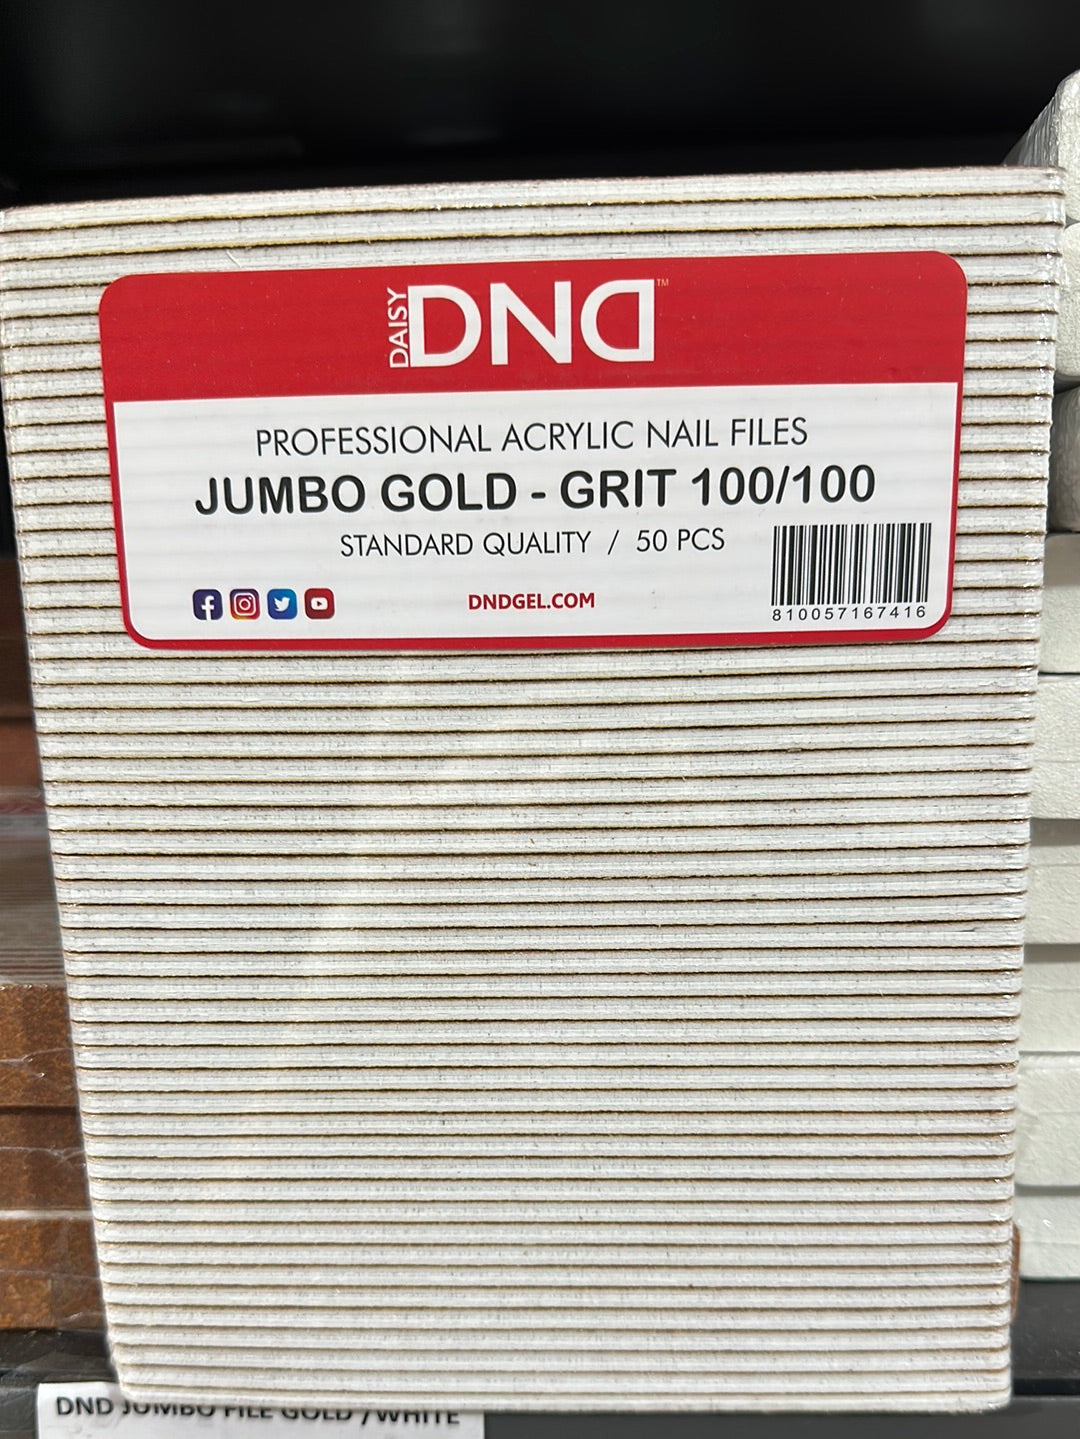 DND JUMBO File Golden 100/100 GRIT